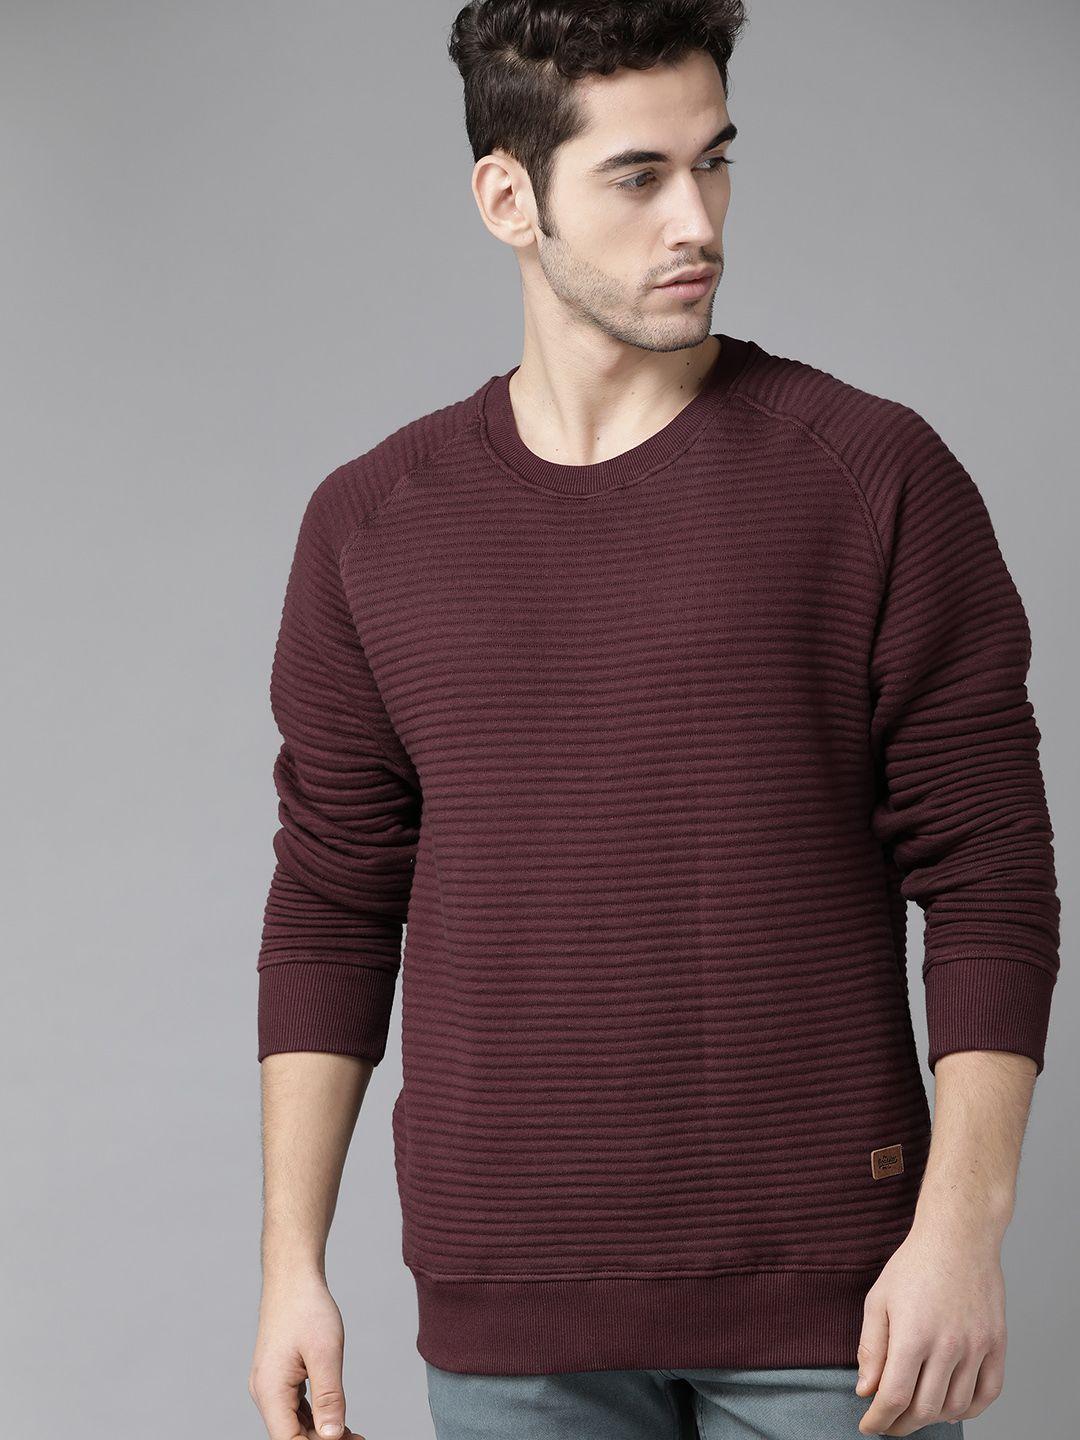 roadster men maroon self-striped sweatshirt